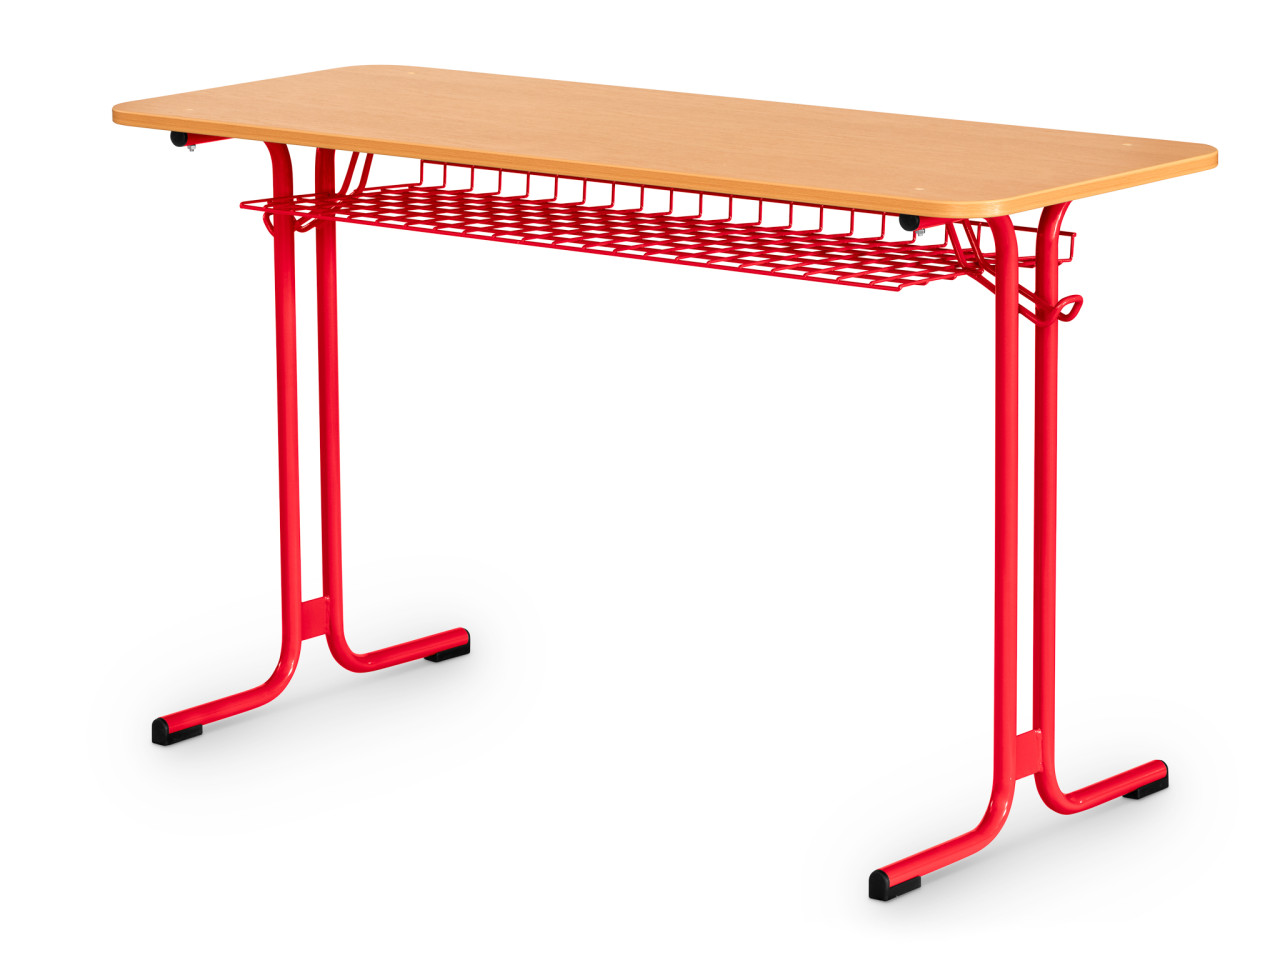 Školský stôl dvojmiestny LEKTOR VK 454